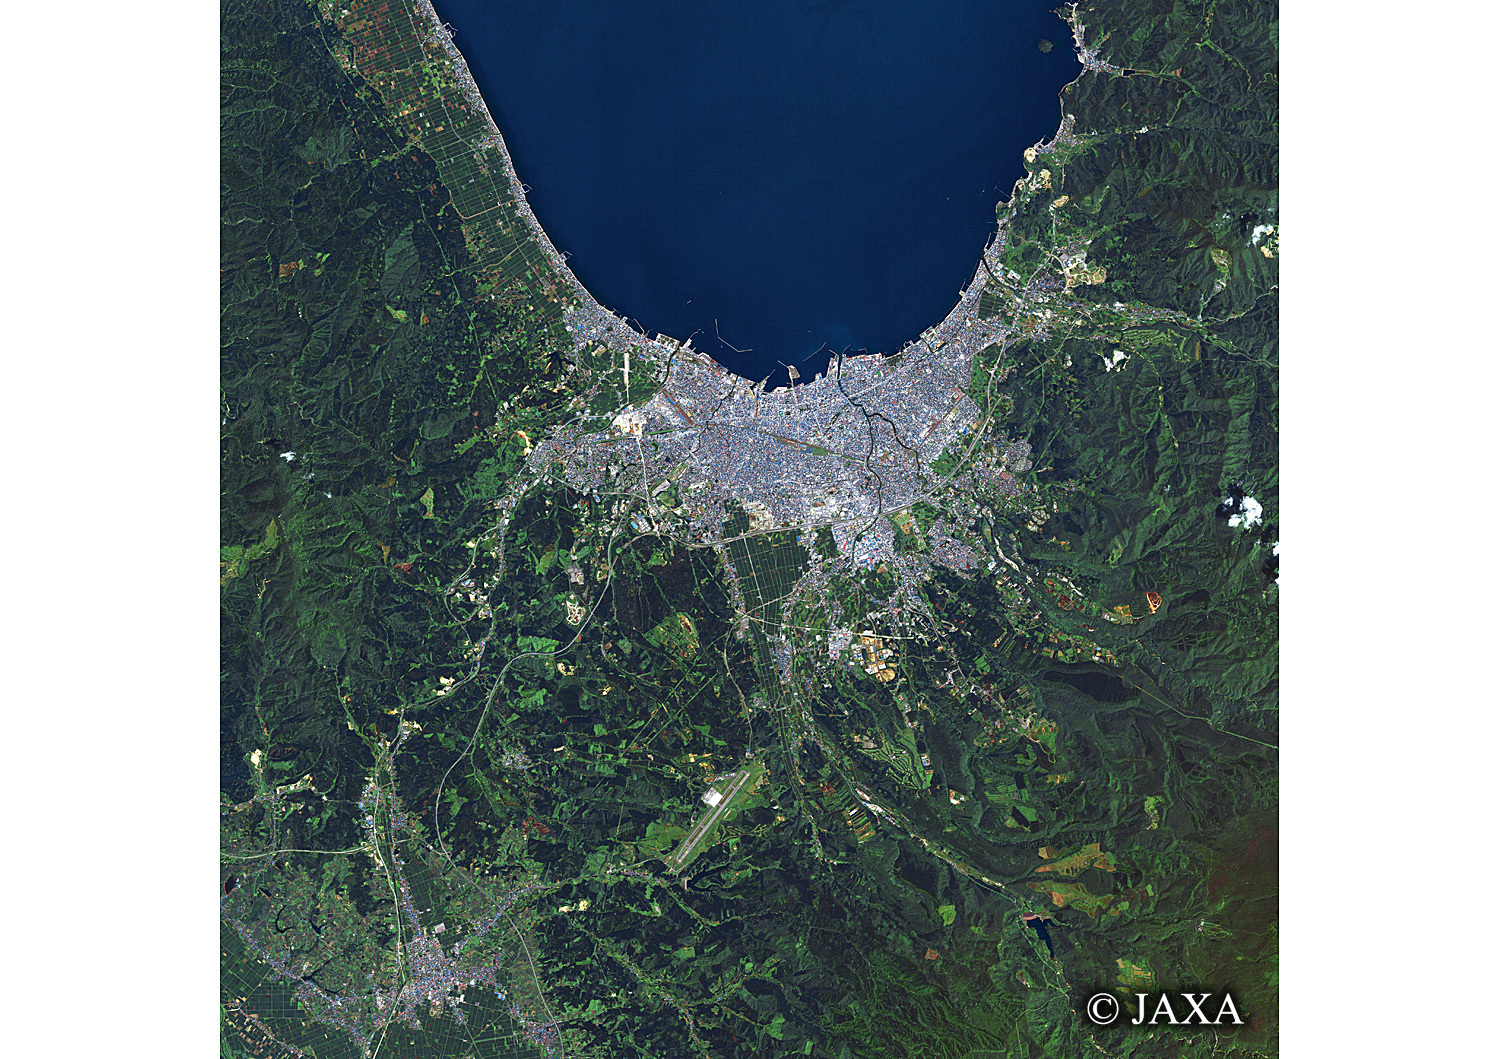 だいちから見た日本の都市 青森市:衛星画像